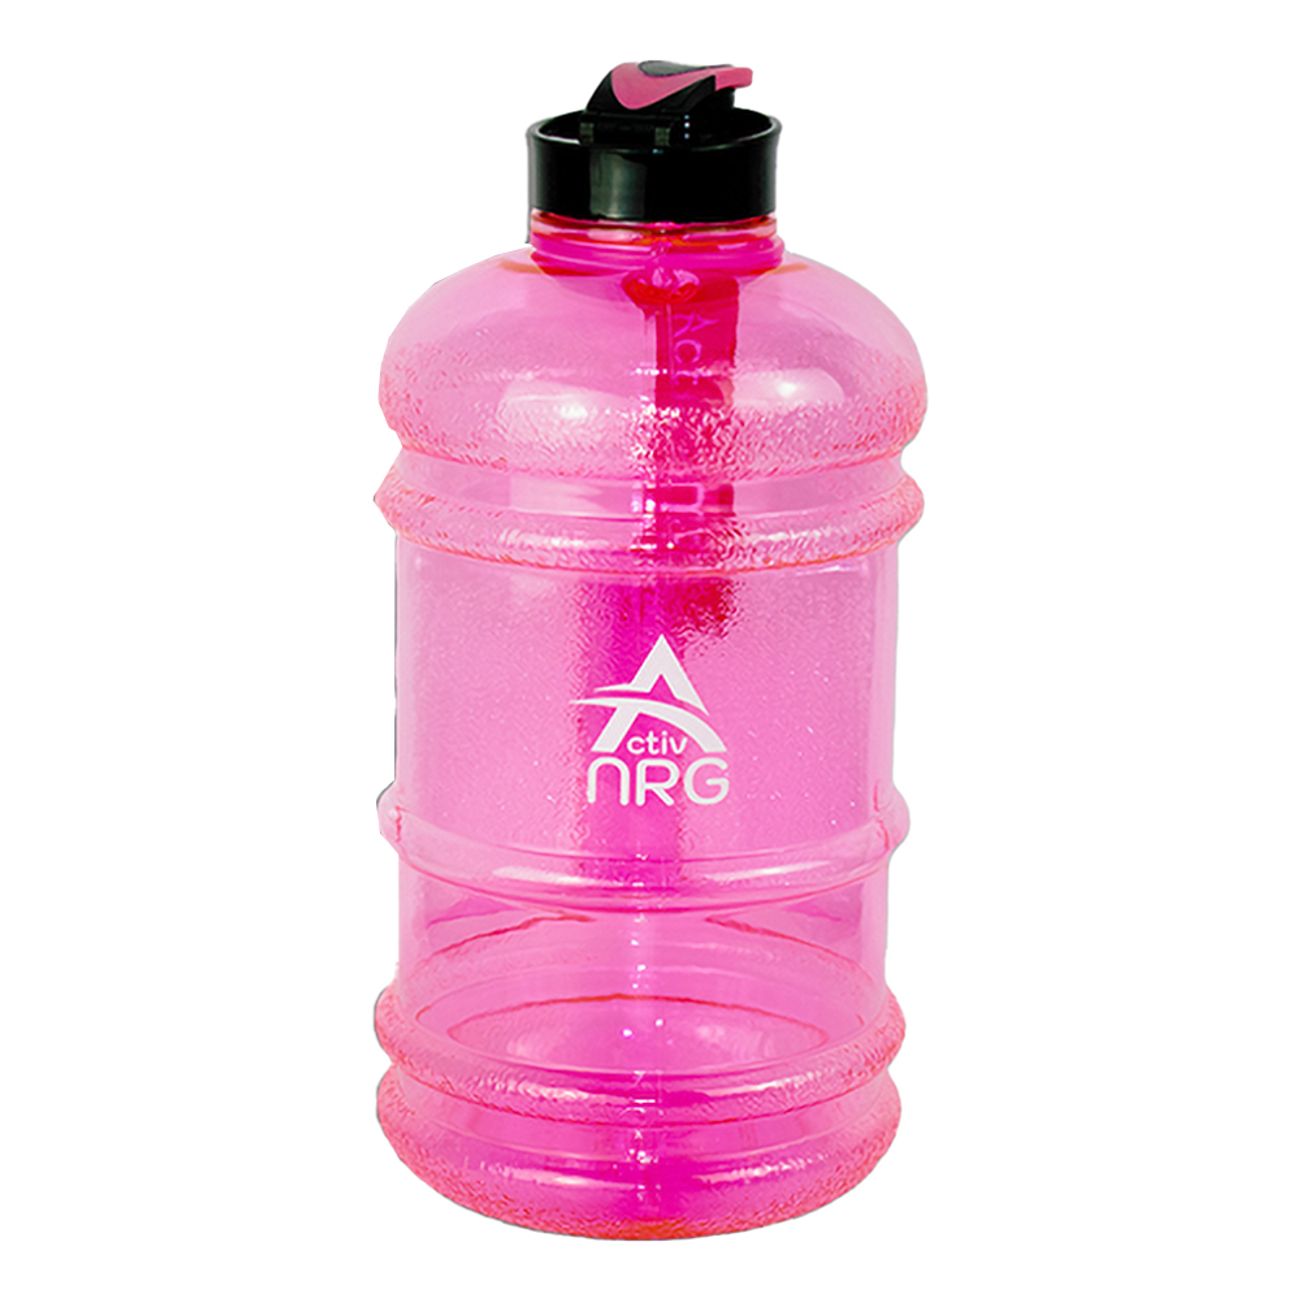 activ-nrg-water-bottle-black-81601-3